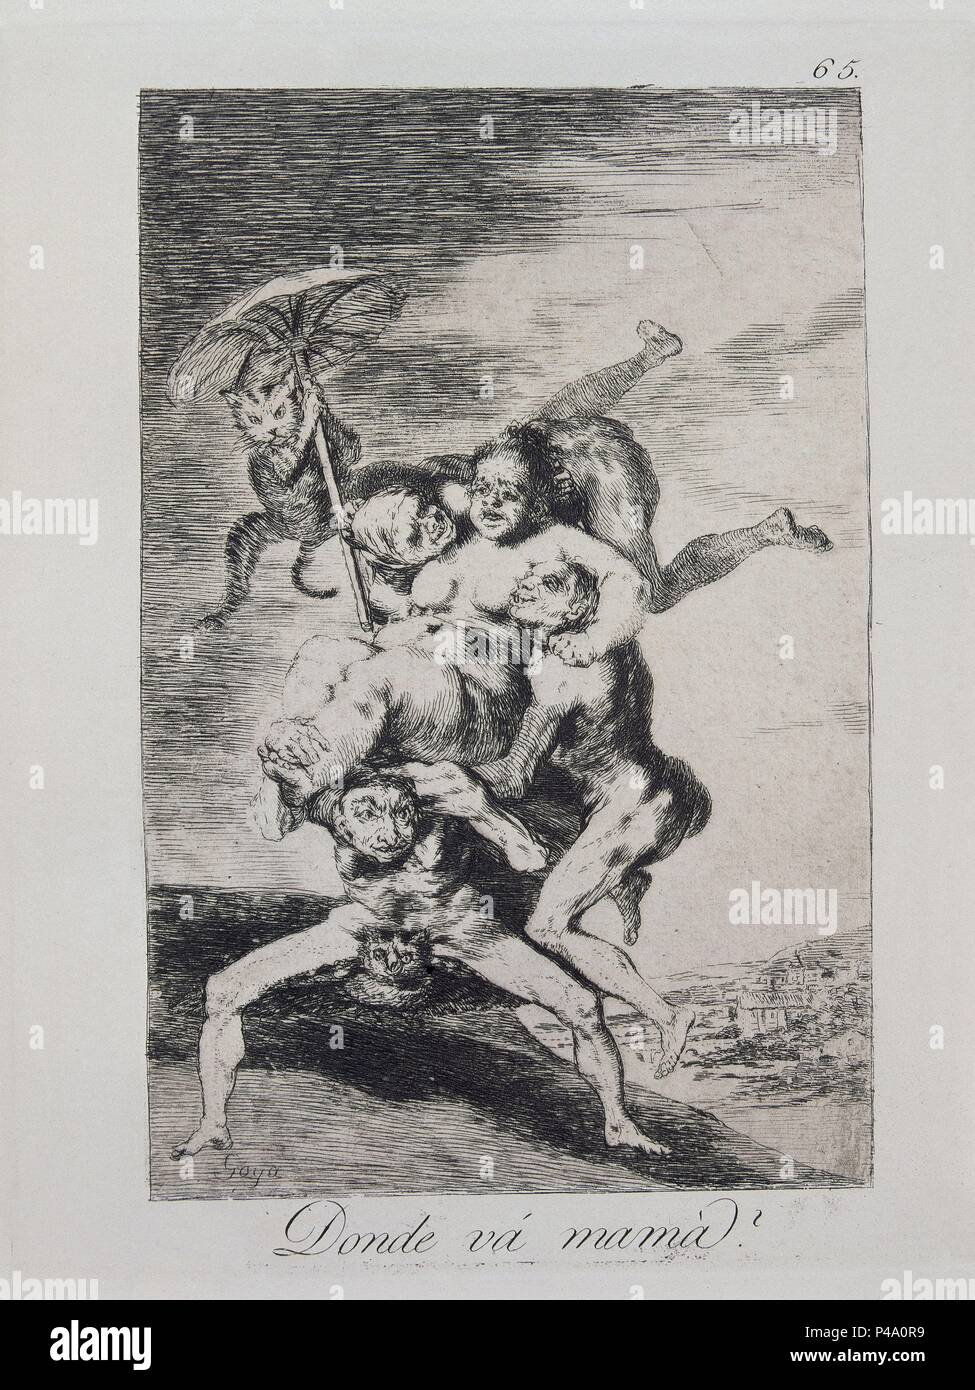 Die Launen, Platte 65. "Wo ist Mama? (Dónde va Mamá?)", 1799, Radierung, Aquatinta und brüniert Burin auf Bütten, 21 x 16,2 cm. Autor: Francisco de Goya (1746-1828). Lage: Biblioteca Nacional - COLECCION, MADRID, SPANIEN. Stockfoto